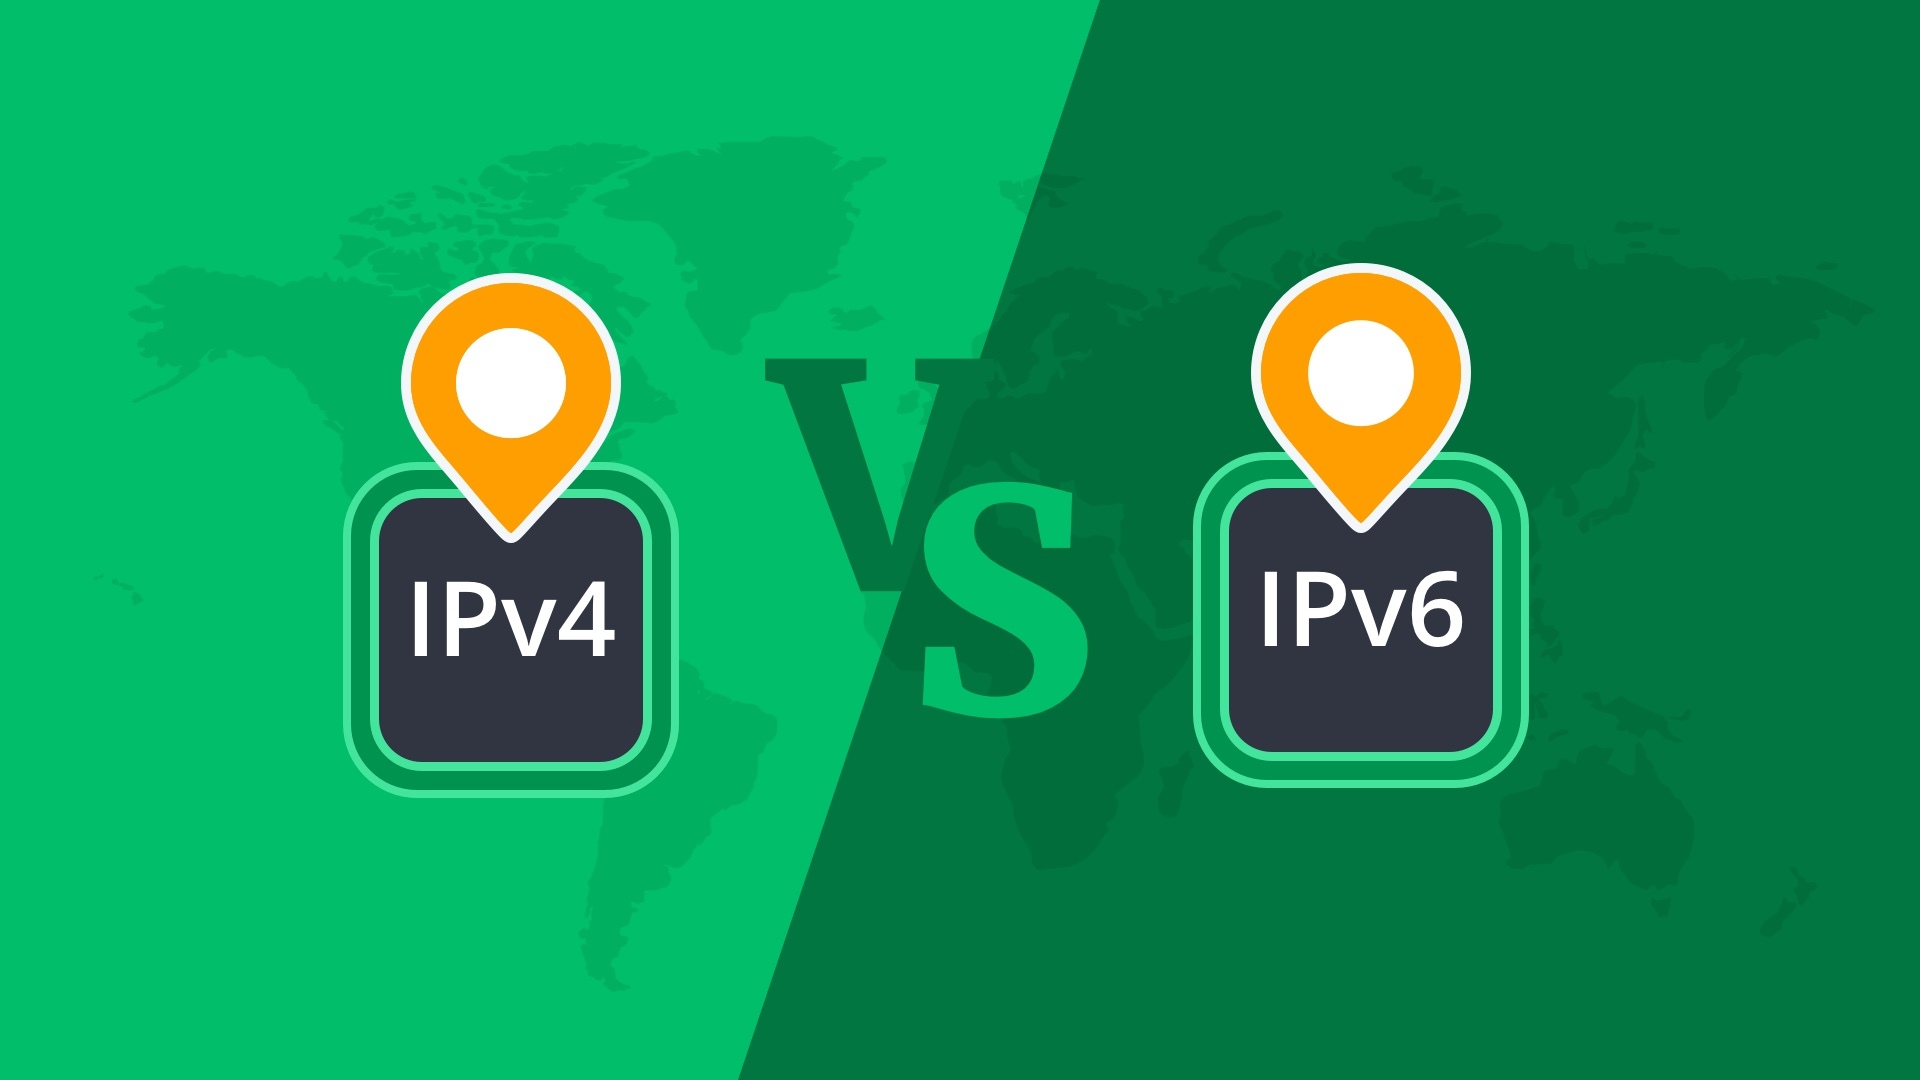 ipv4 vs ipv6